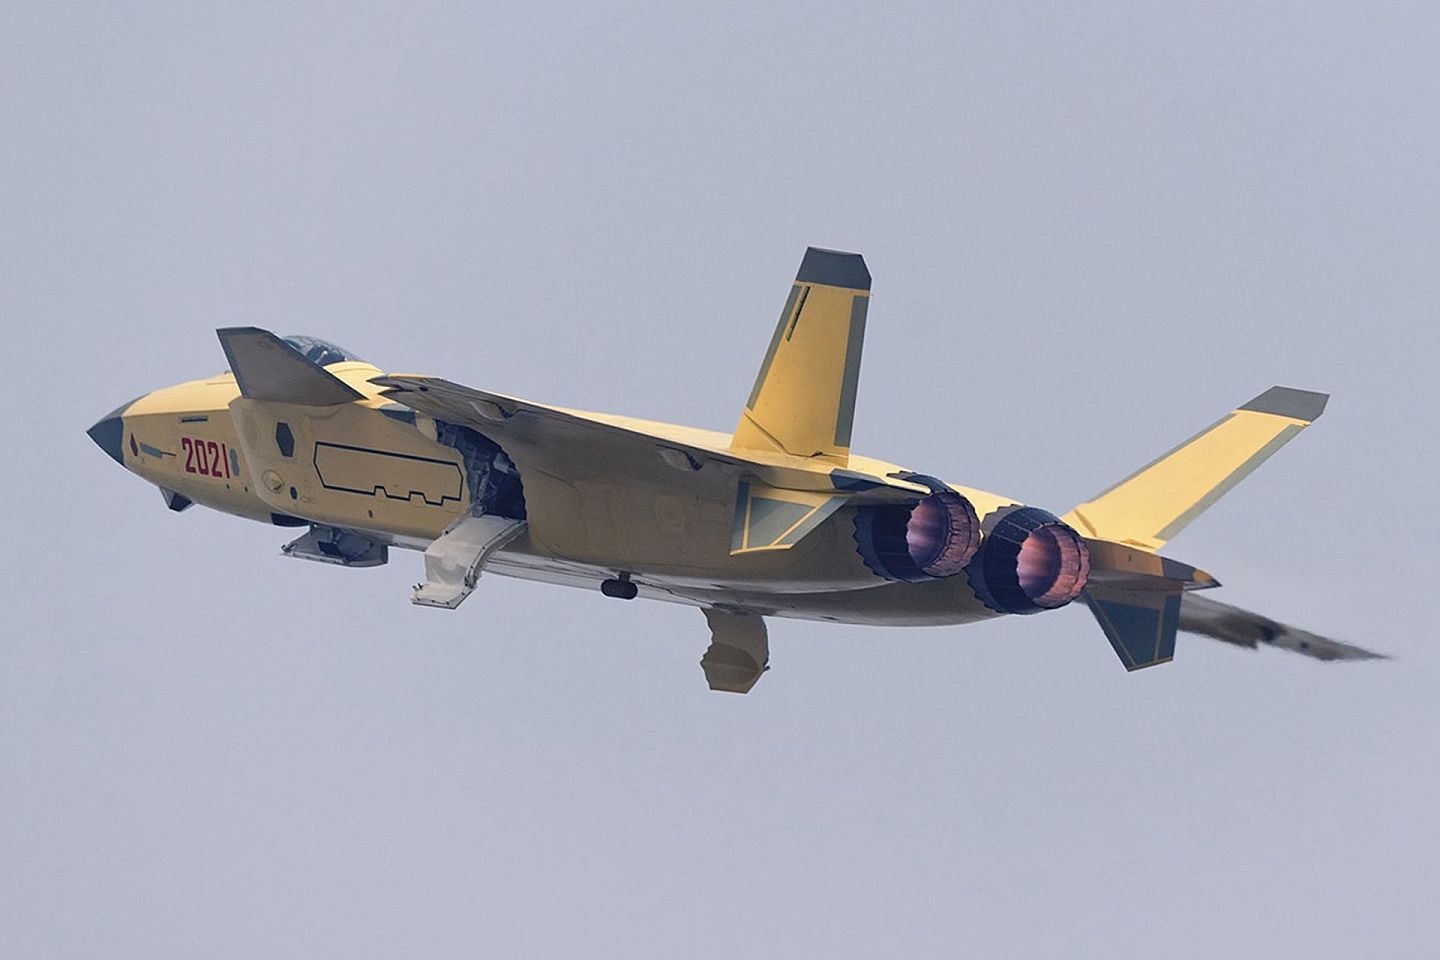 歼-20使用的有锯齿设计的涡扇-10B改进型发动机。（微博@白龙_龙腾四海）